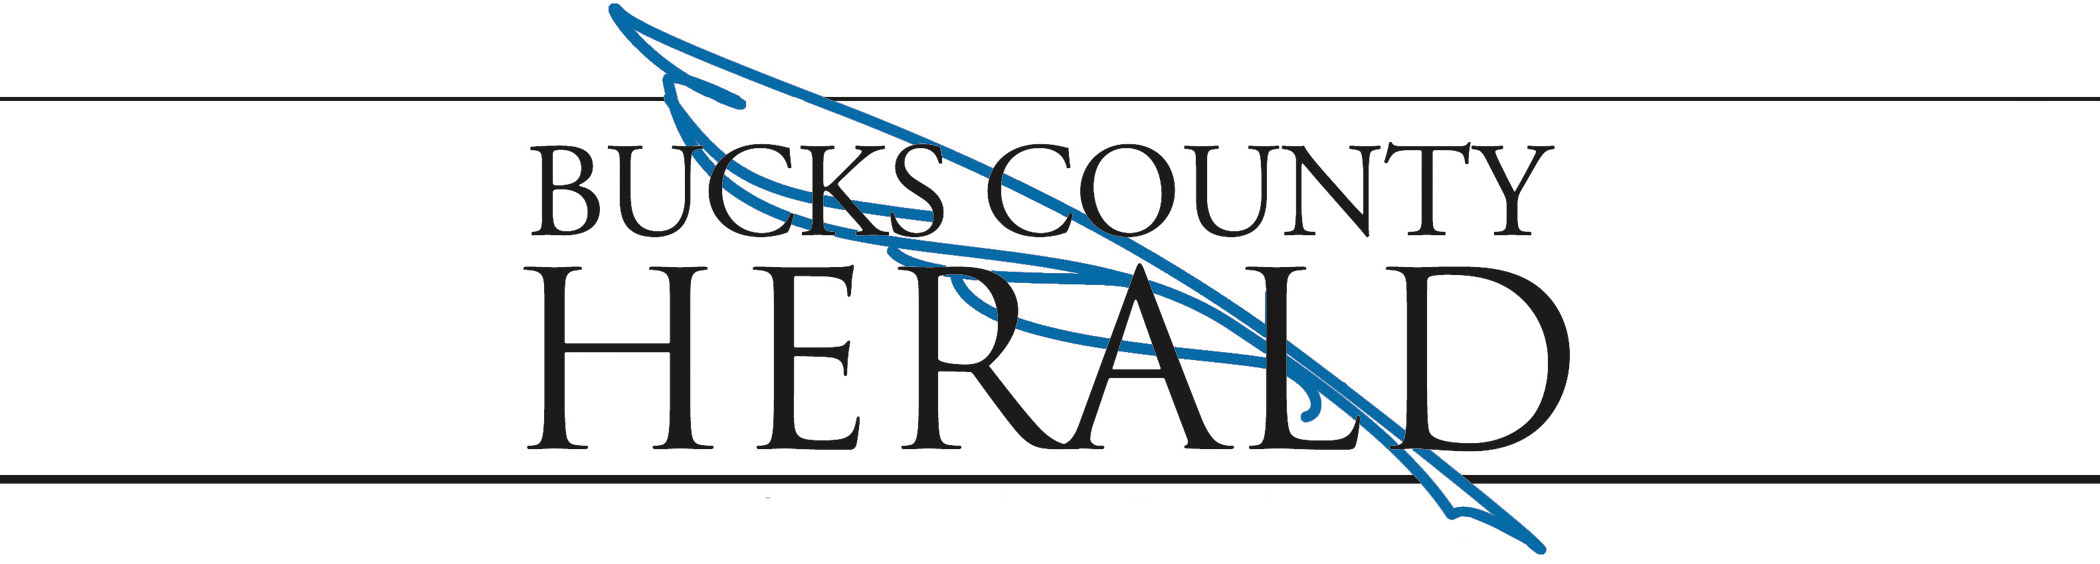 Bucks County Herald